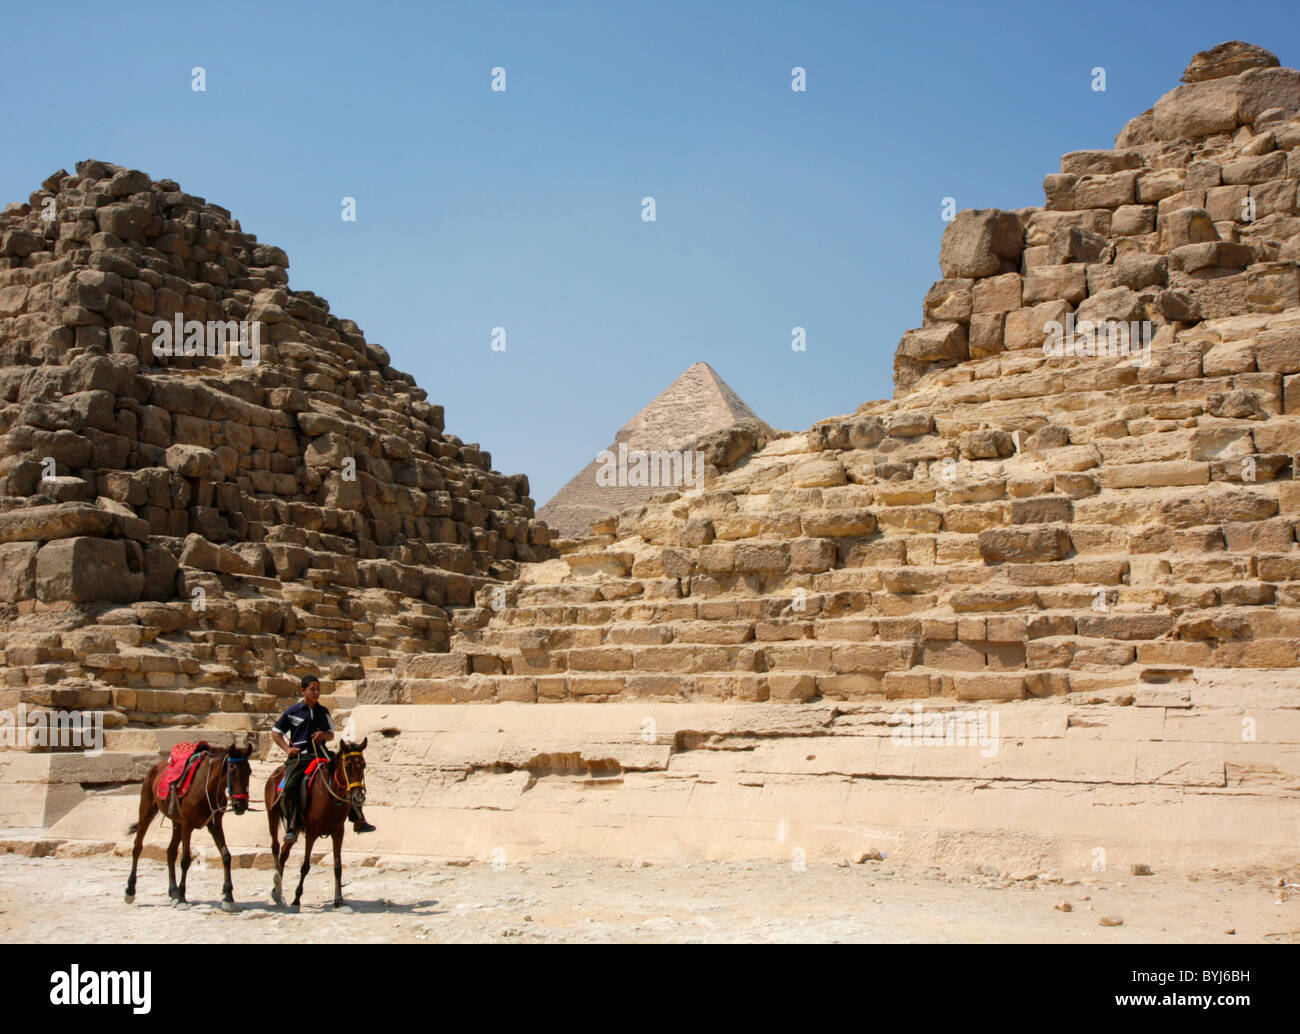 Ein ägyptische junge reitet auf einem Pferd und führt ein anderes vor Pyramiden in Gizeh, Ägypten. Stockfoto